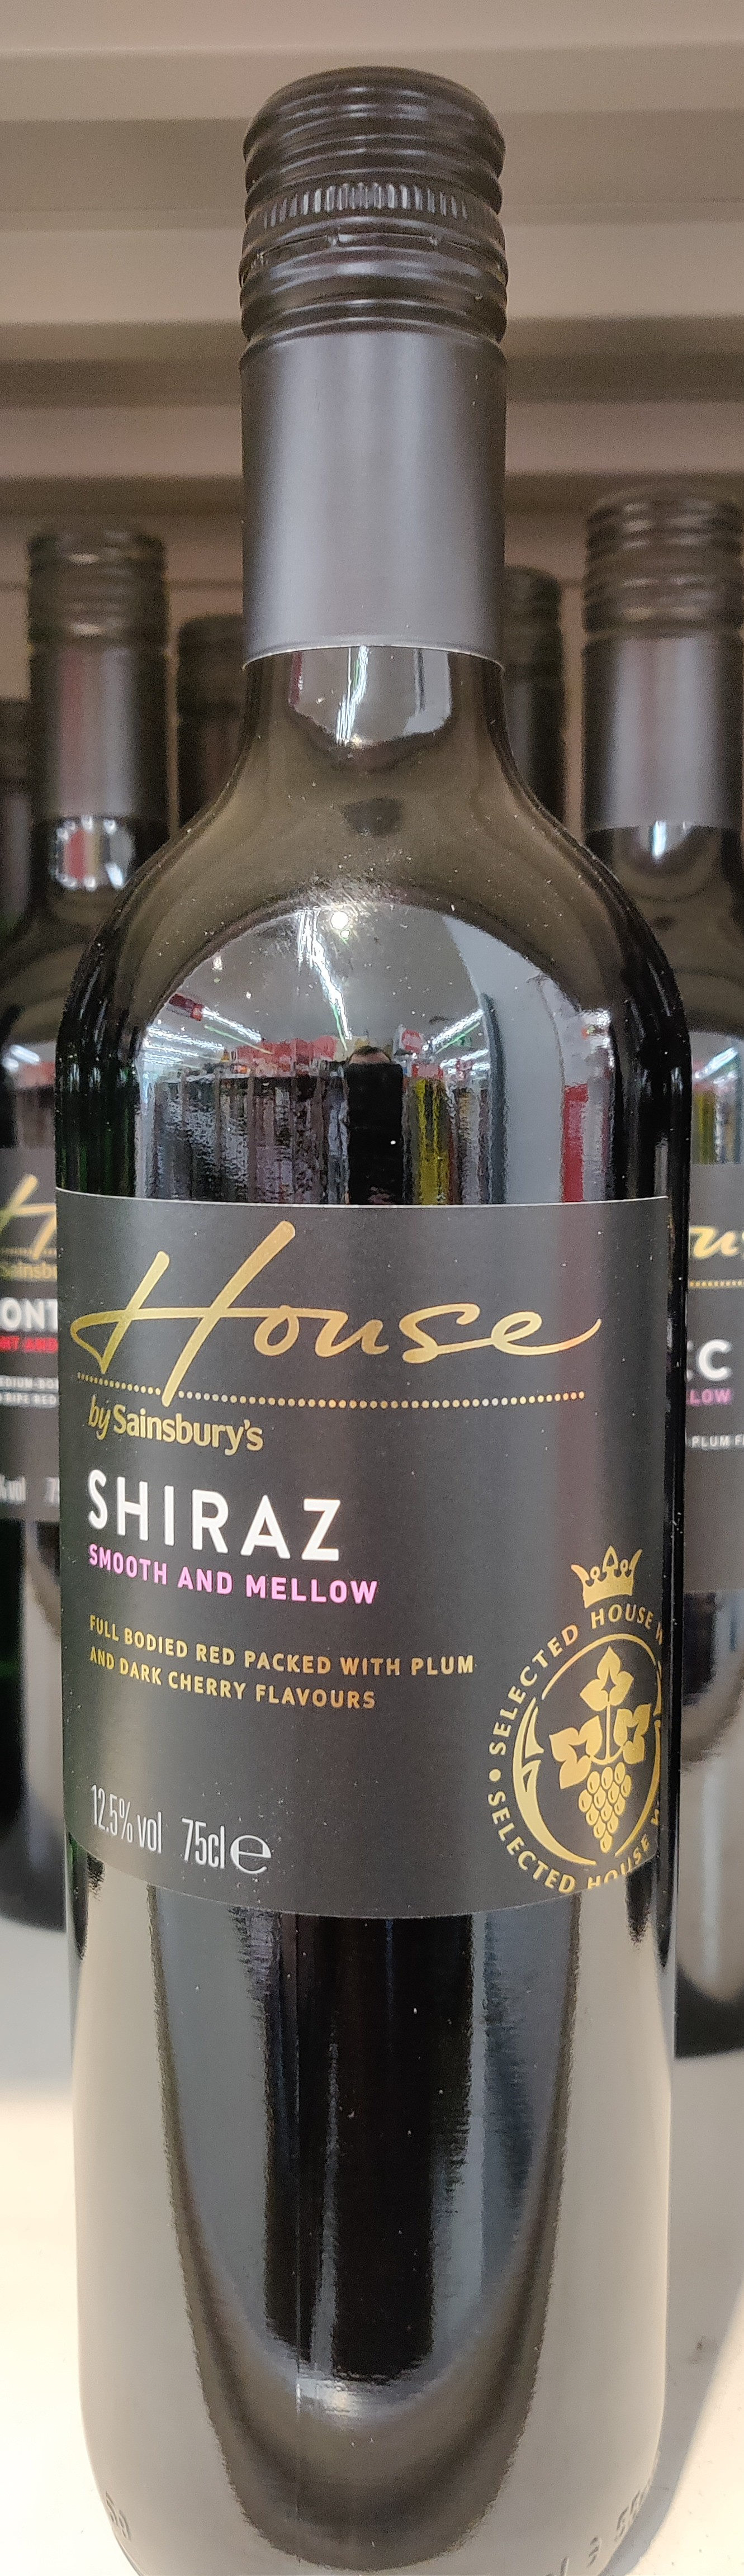 Shiraz - Produit - en